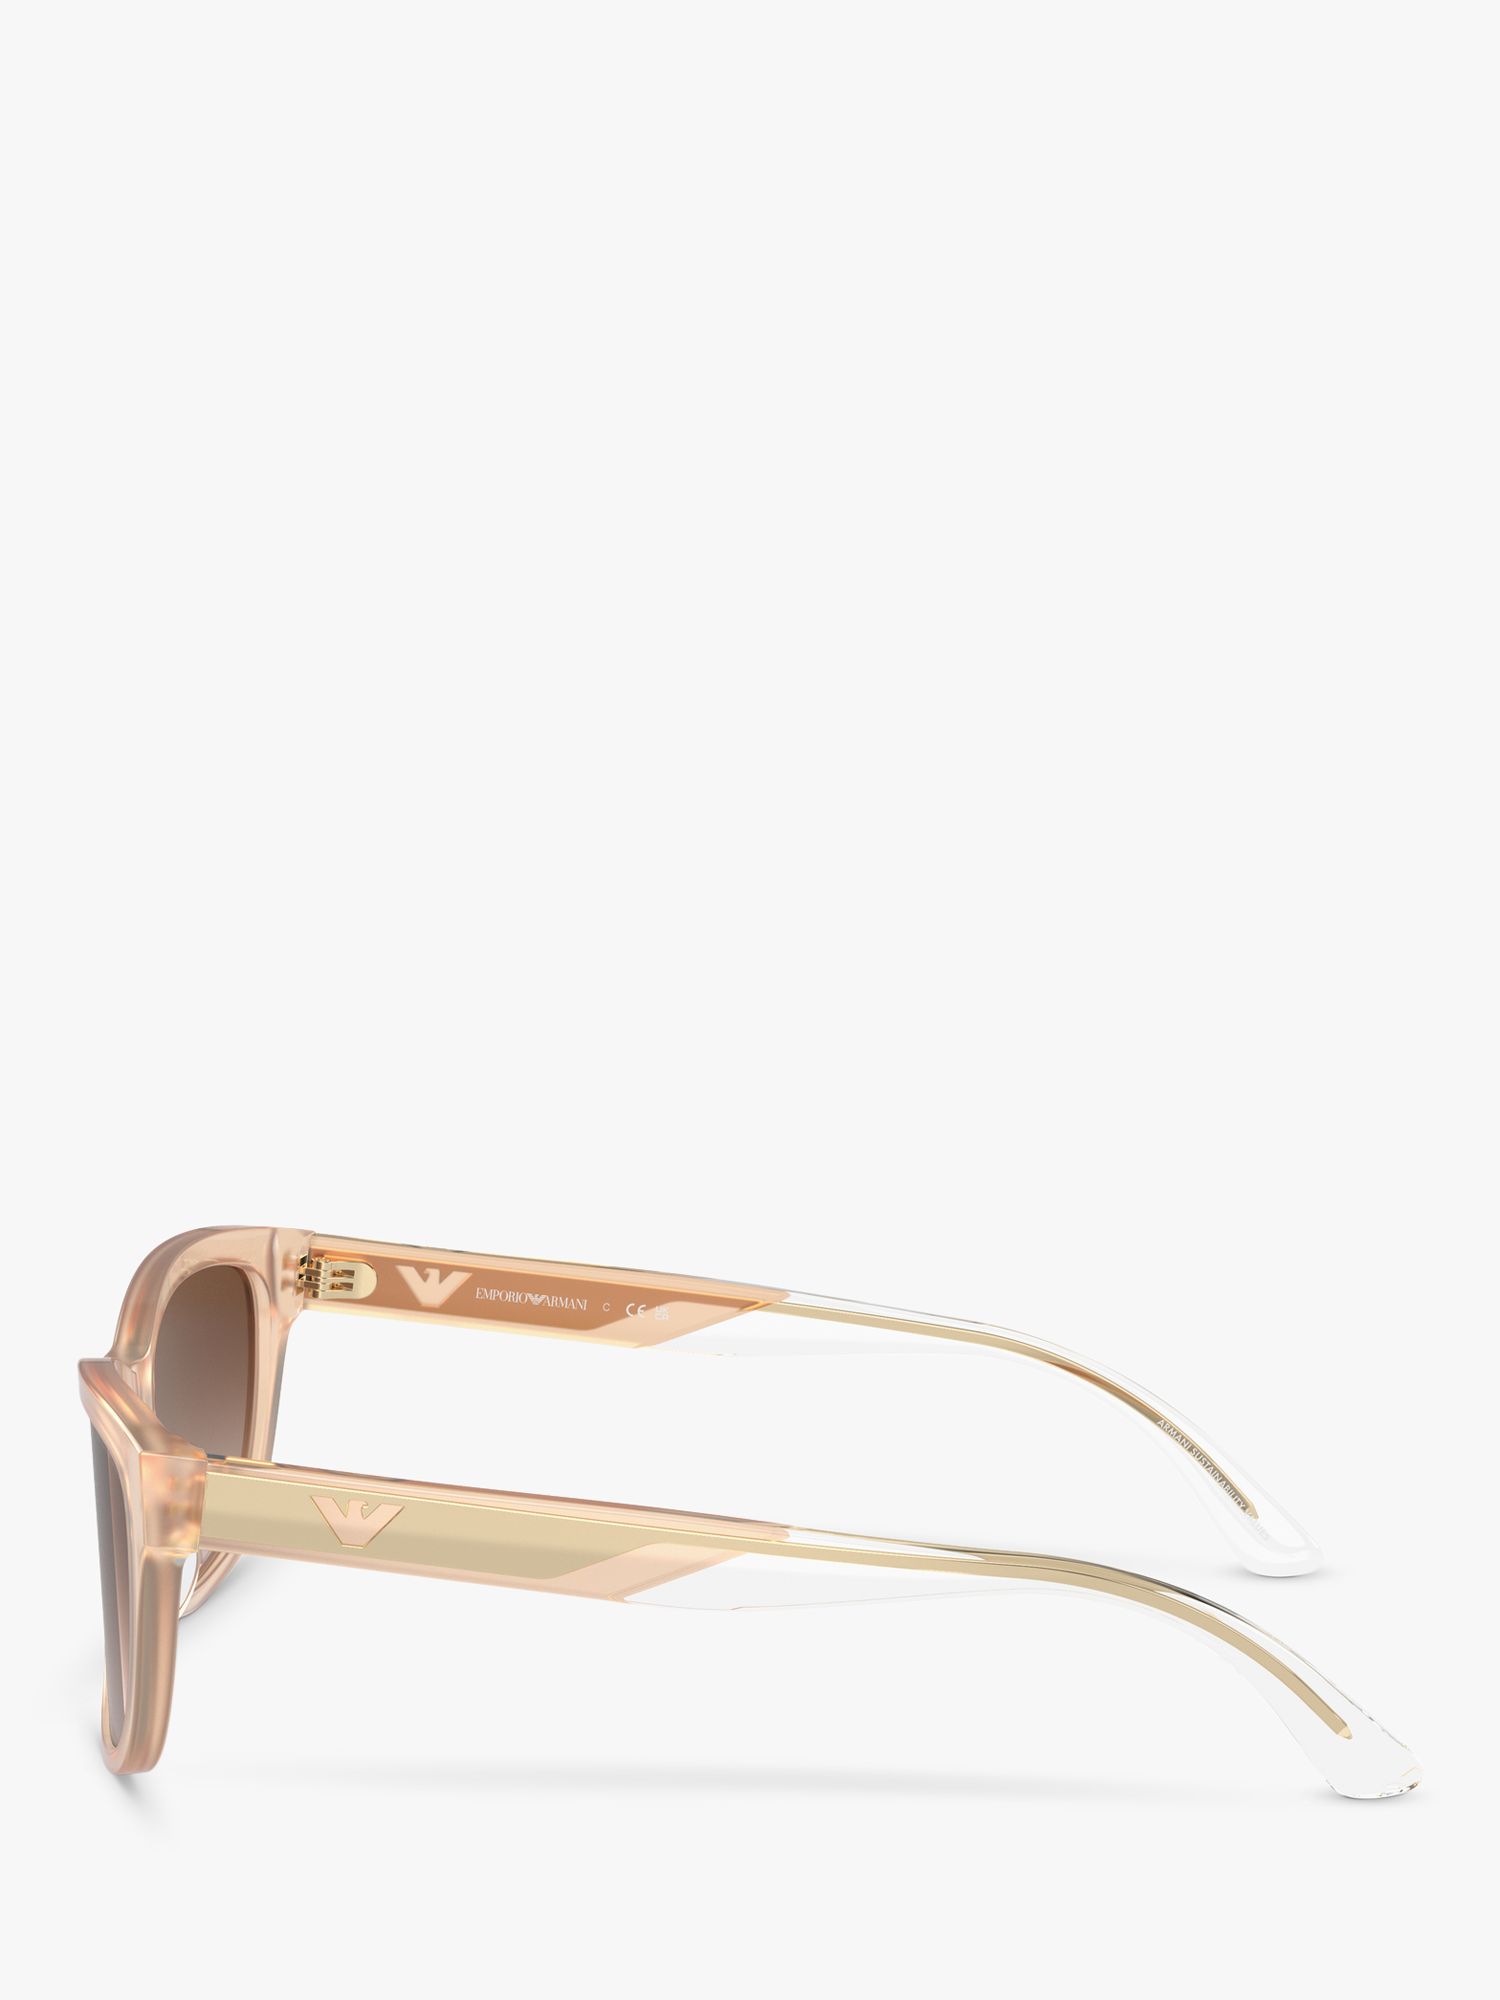 Emporio Armani EA4227U Women's Square Sunglasses, Opaline Tundra/Brown Gradient